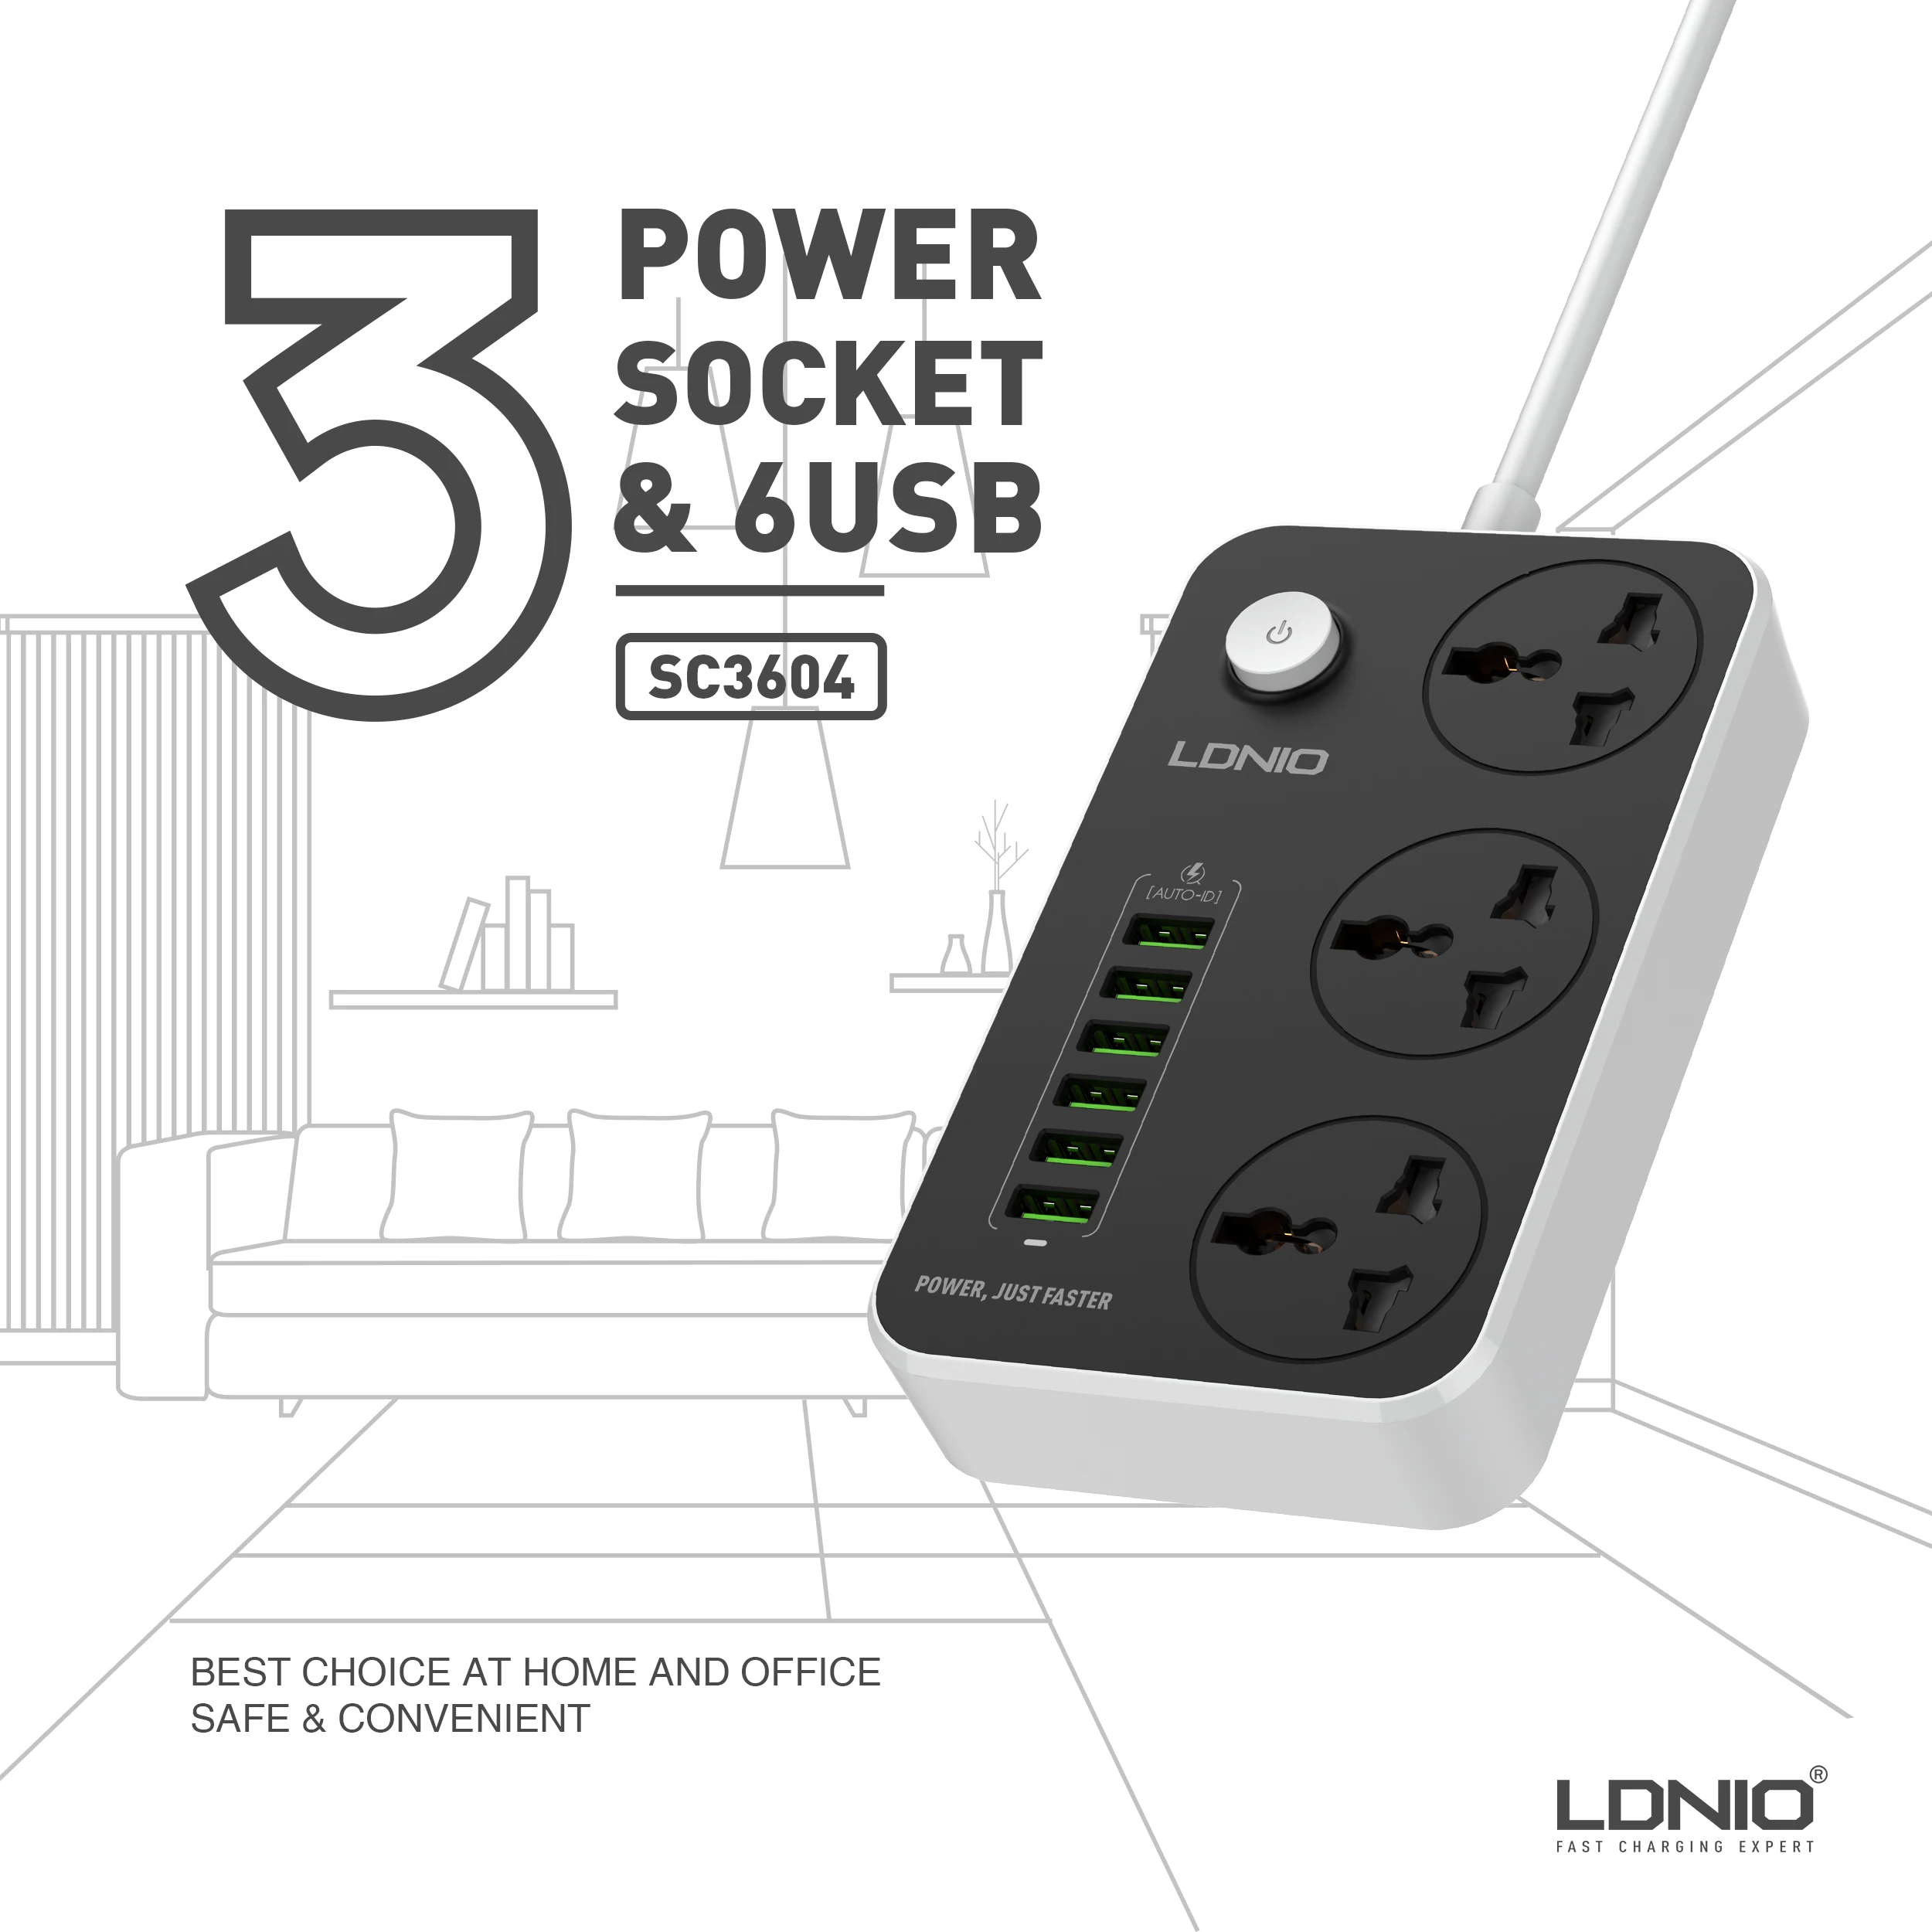 Классический 3-сторонний Универсальный удлинитель LDNIO SC3604 с 6 USB-портами, шнур питания длиной 2 метра